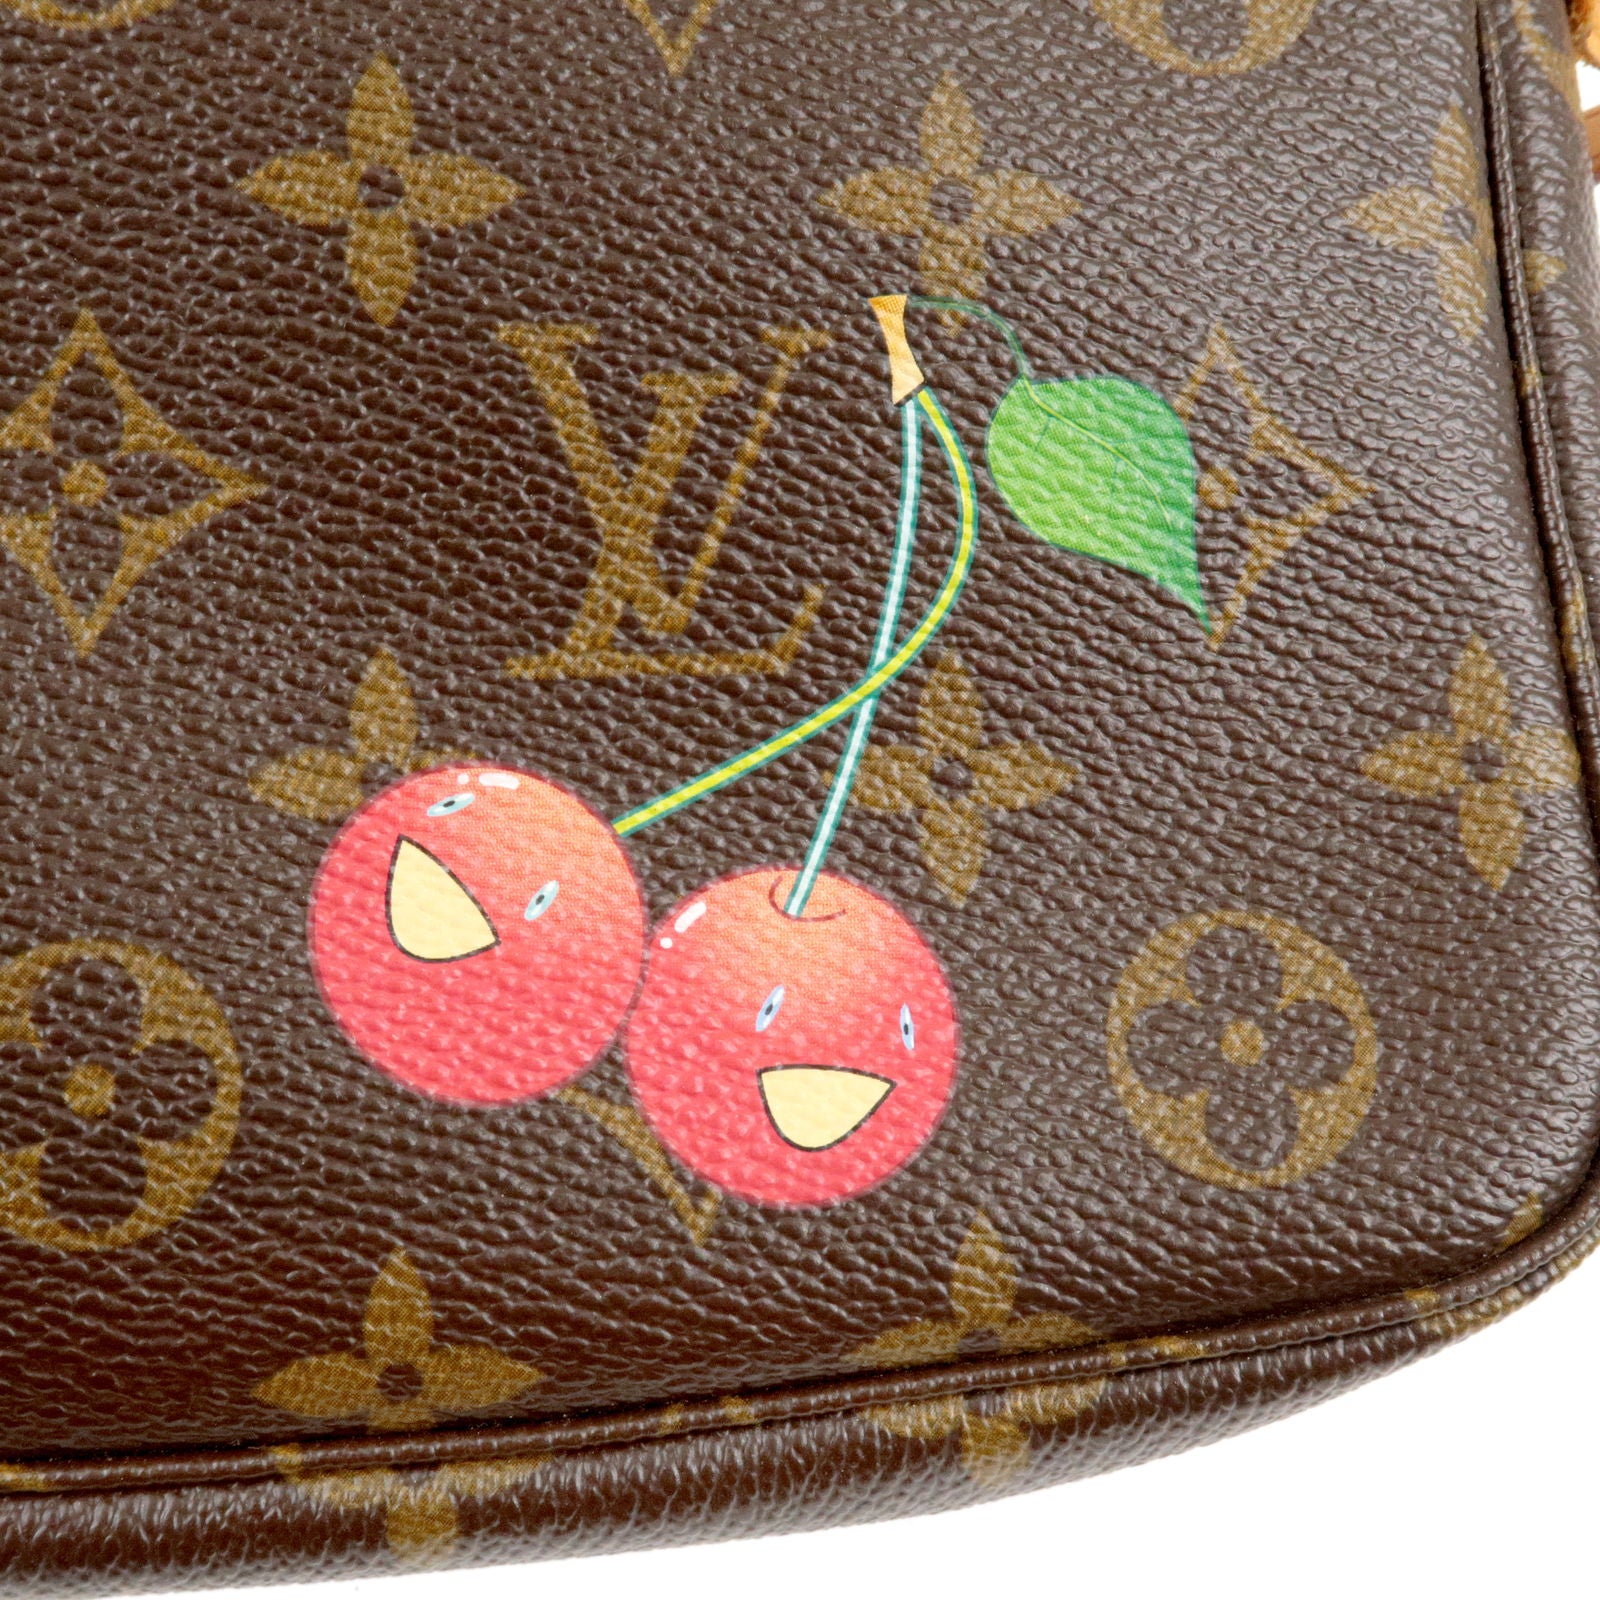 Louis Vuitton Monogram Cherry Blossom Pochette Accessoires (SHG